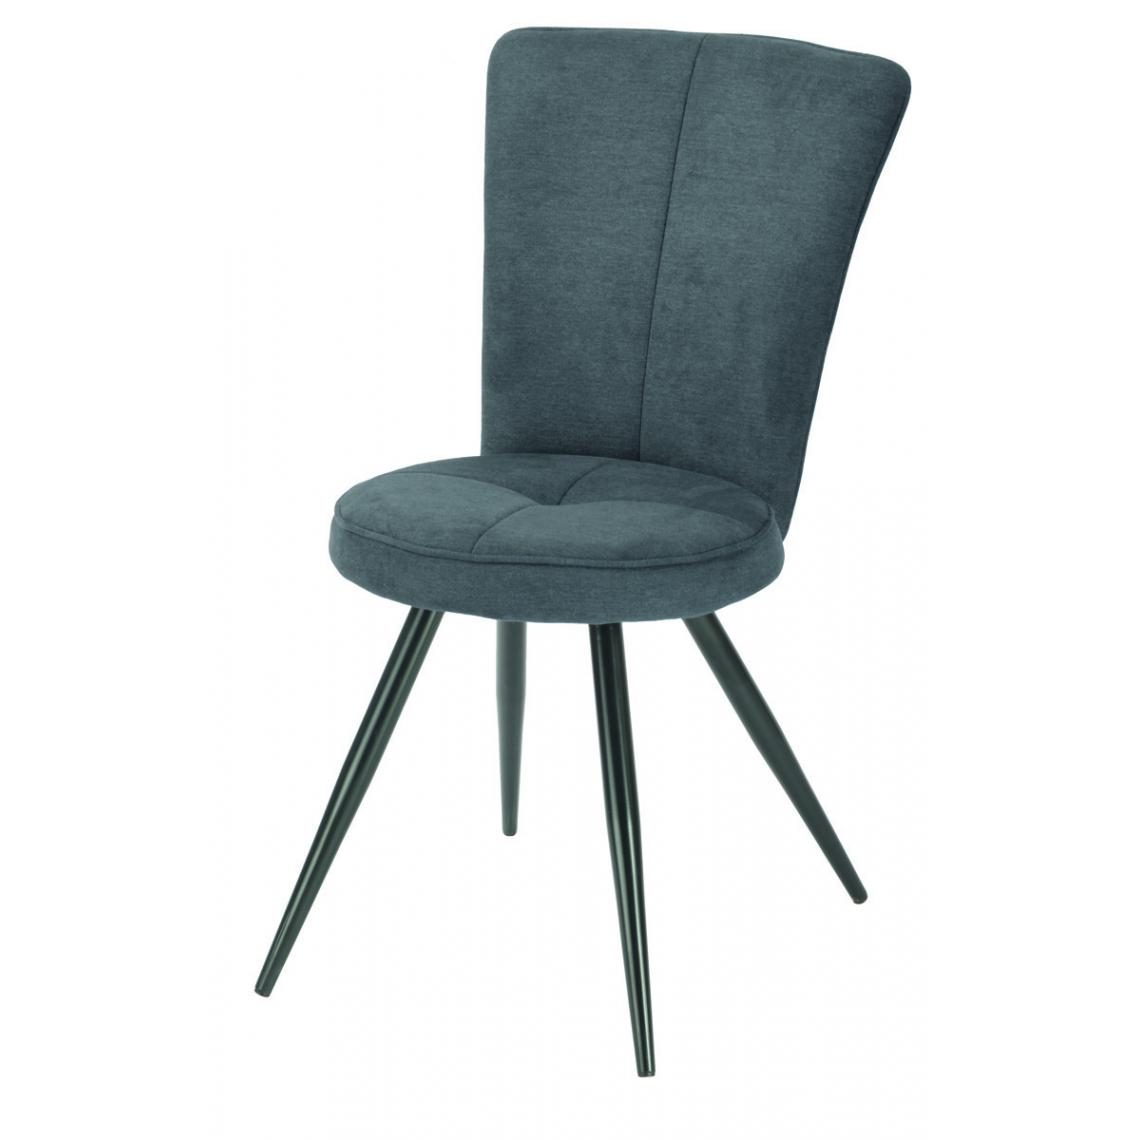 Pegane - Lot de 2 chaises en tissu / métal coloris anthracite mat - Longueur 54 x Profondeur 64 x hauteur 95 x hauteur assise 48 cm - Chaises